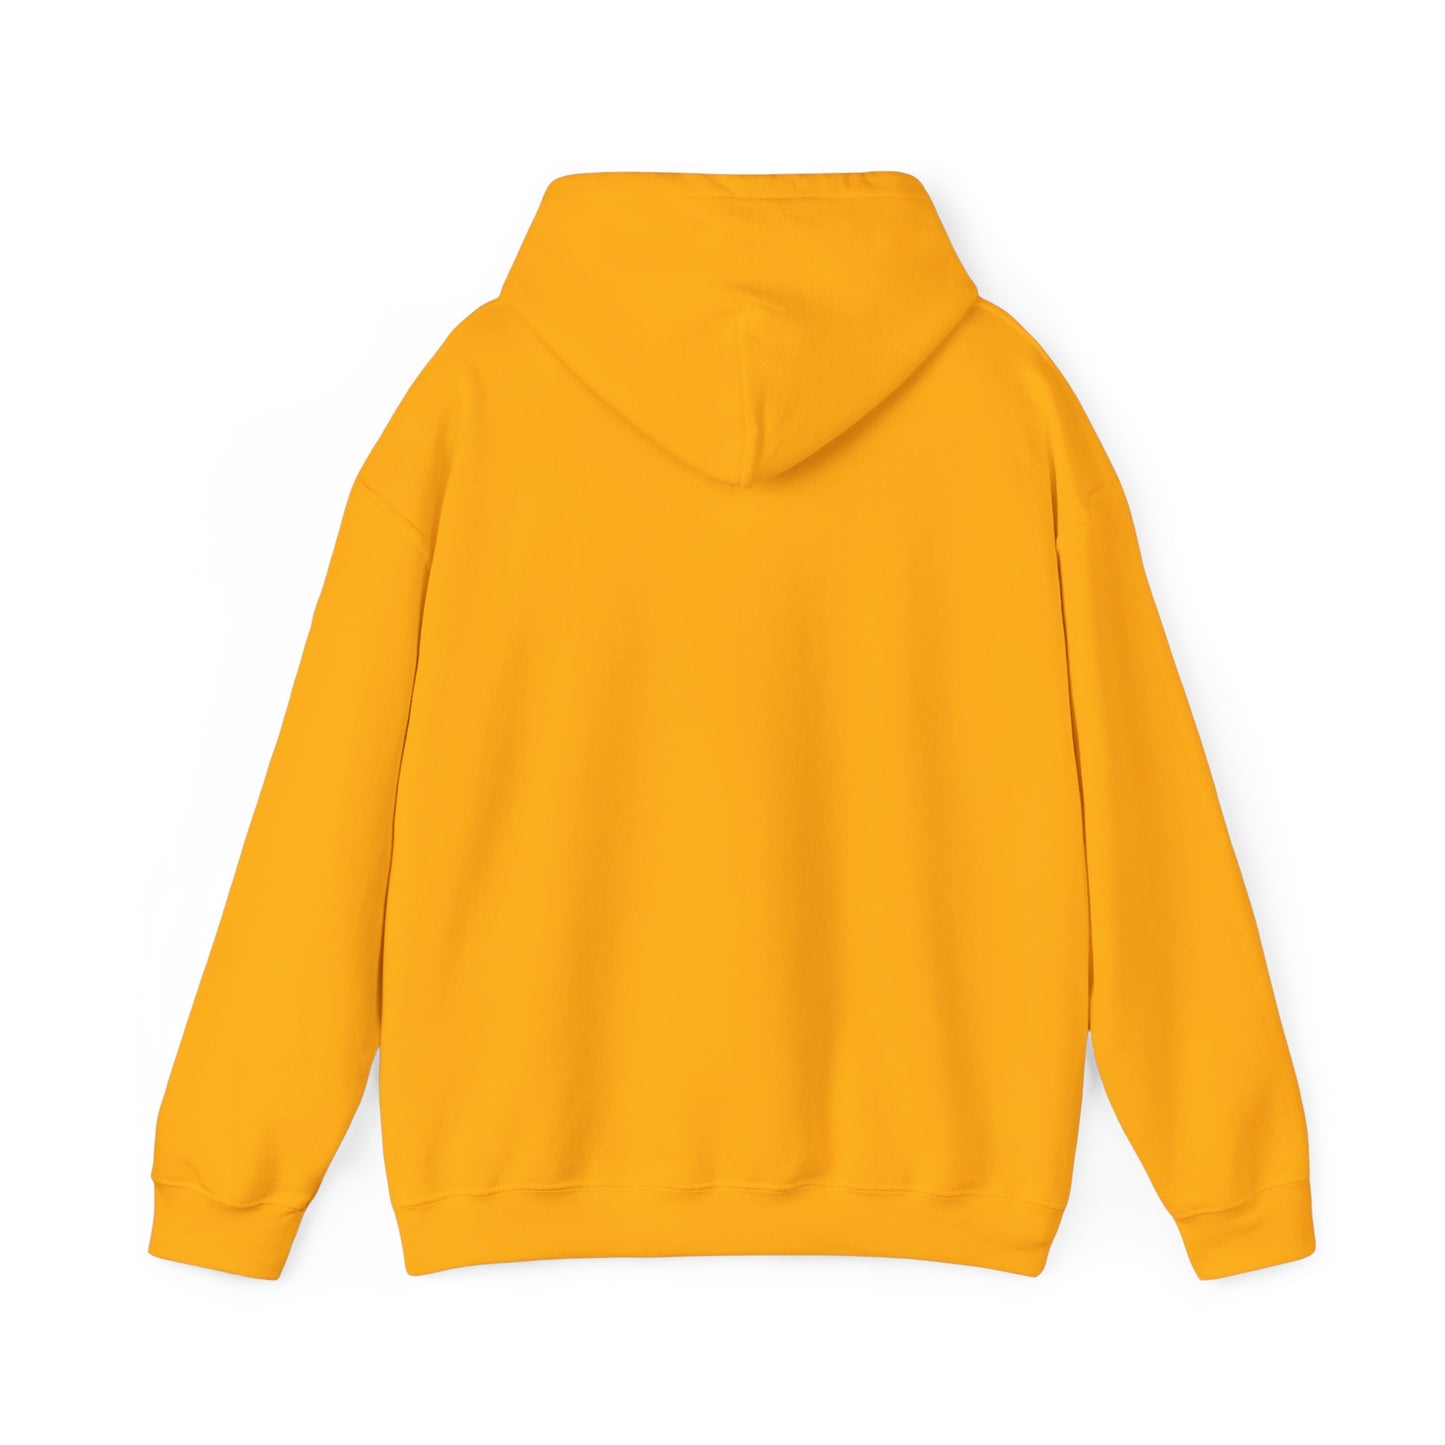 "Warning - Therapist Voice" Unisex Hooded Sweatshirt